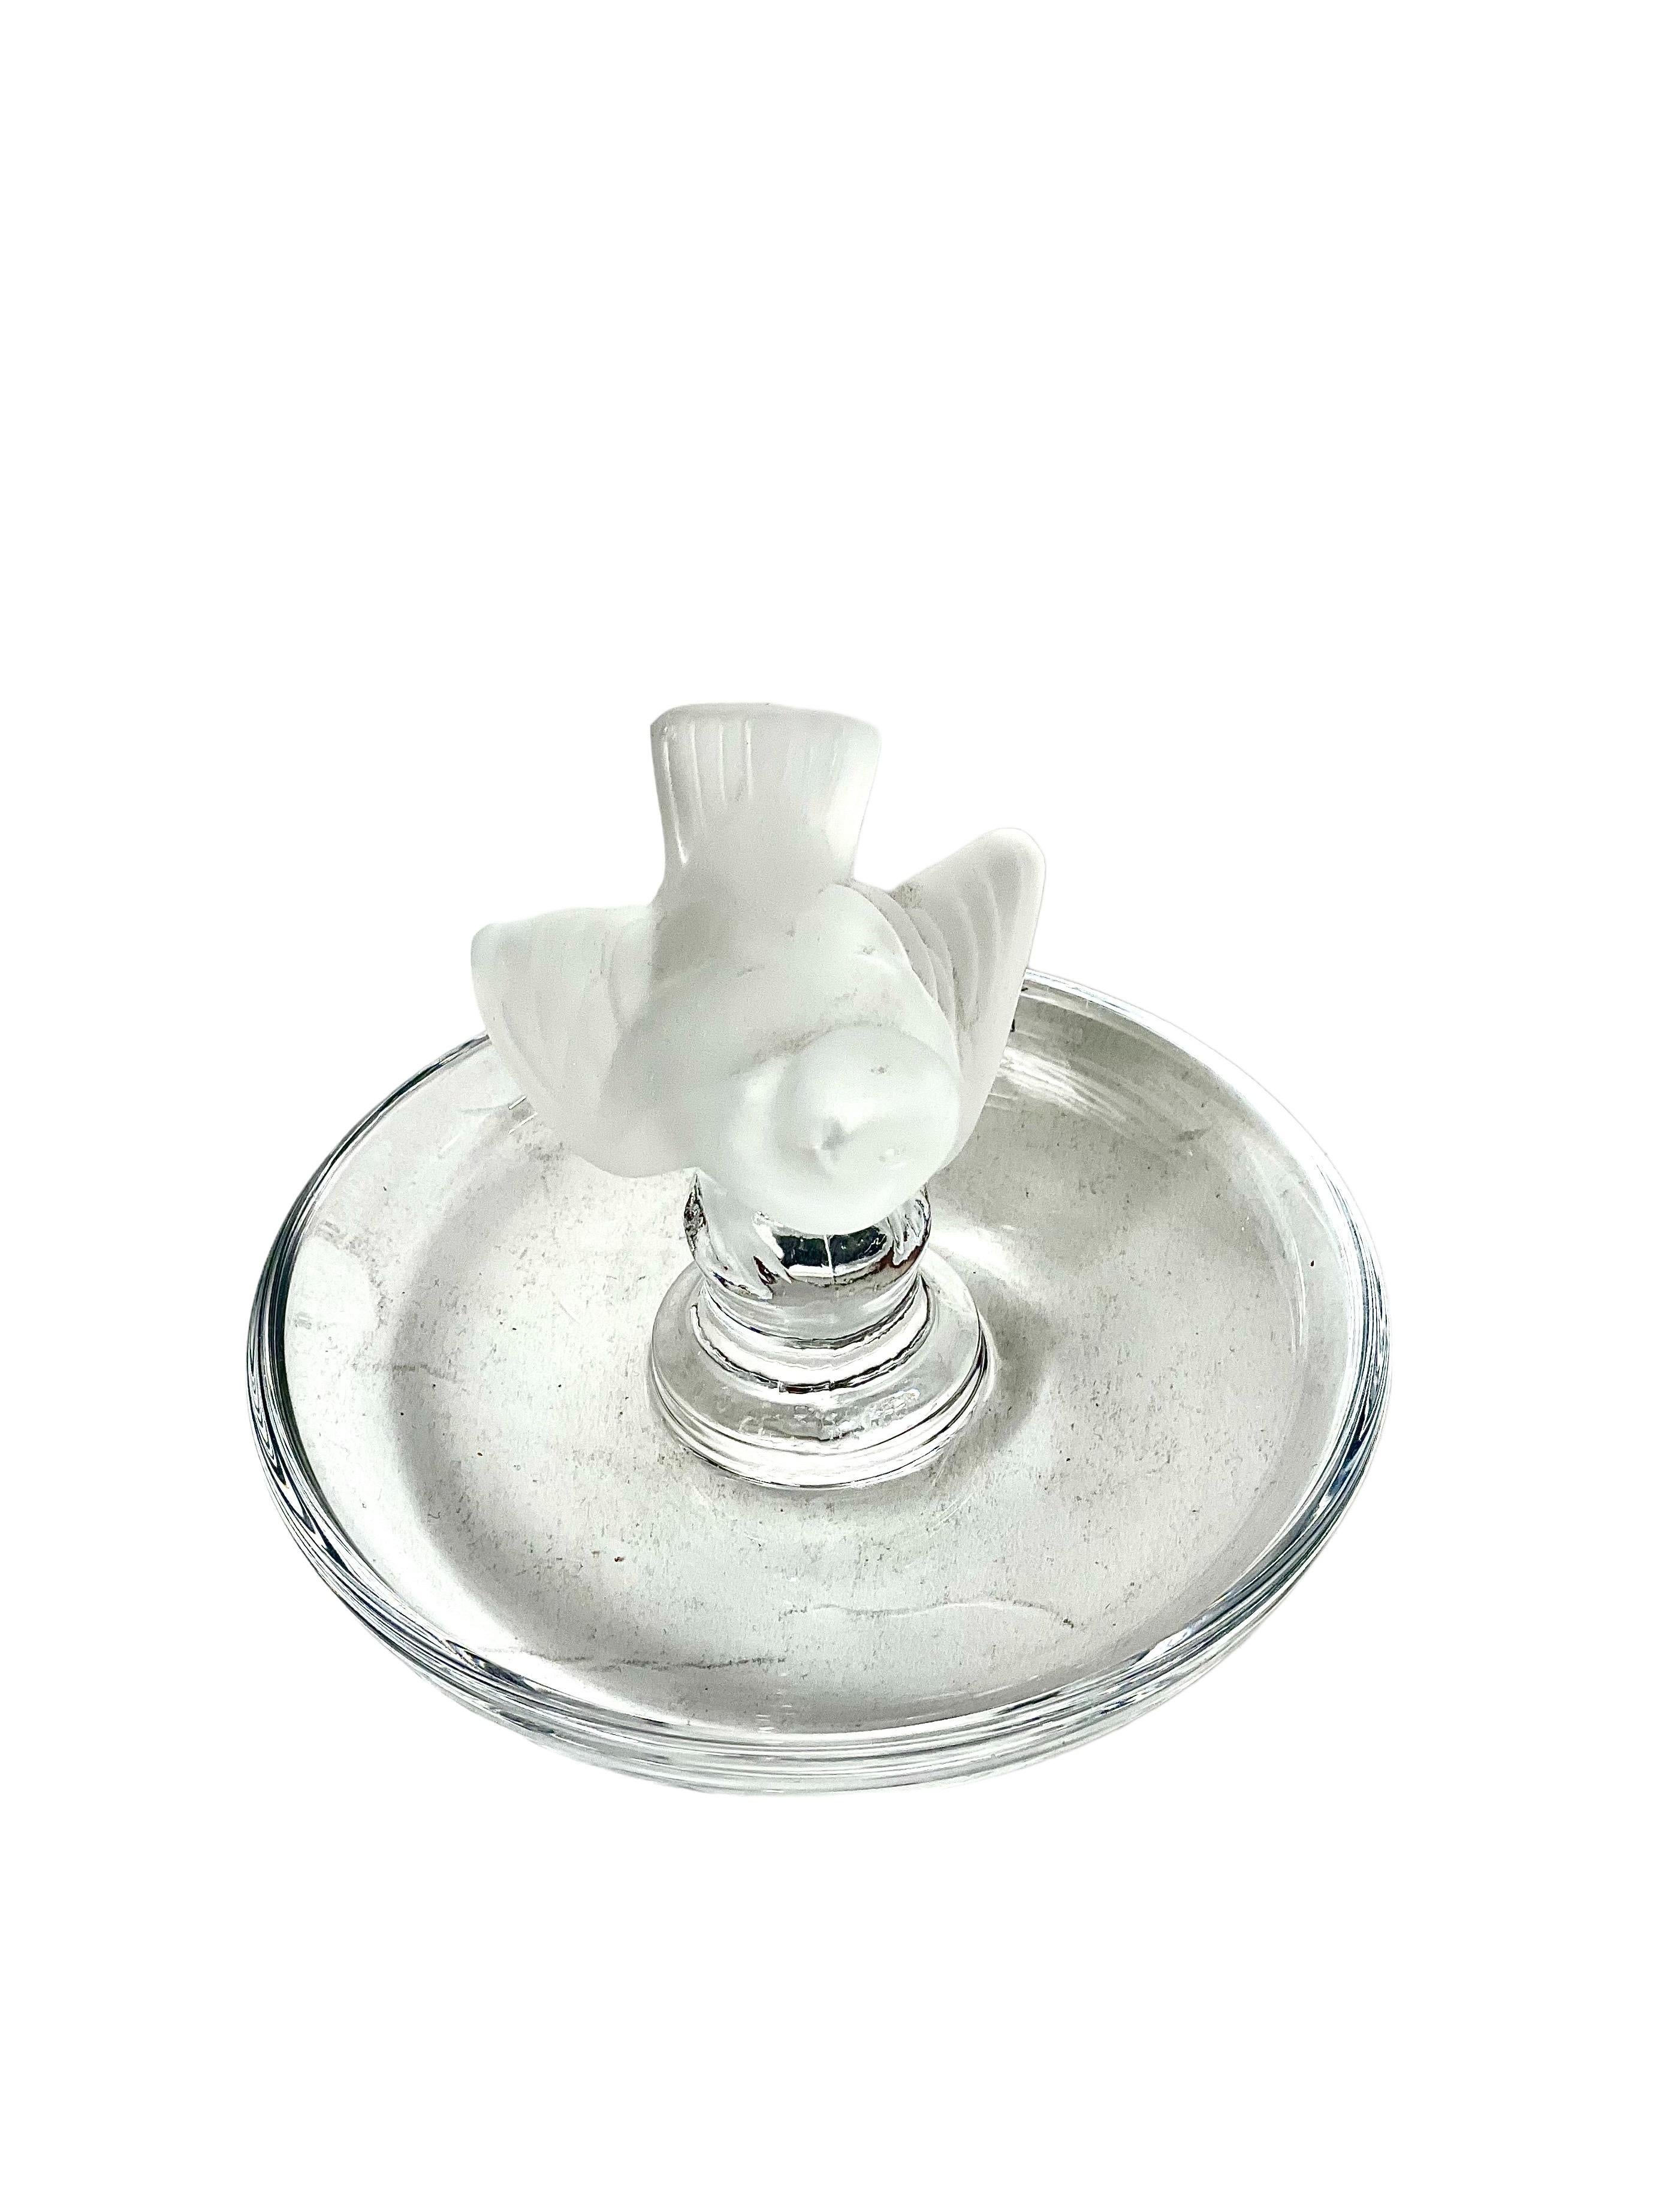 Eine zarte Kristallringschale mit einem mattierten Spatz auf der Spitze, von der berühmten Kristall- und Glasdesignmarke Lalique. Diese sehr hübsche und ikonische Schale bietet eine elegante und zugleich praktische Aufbewahrungsmöglichkeit für